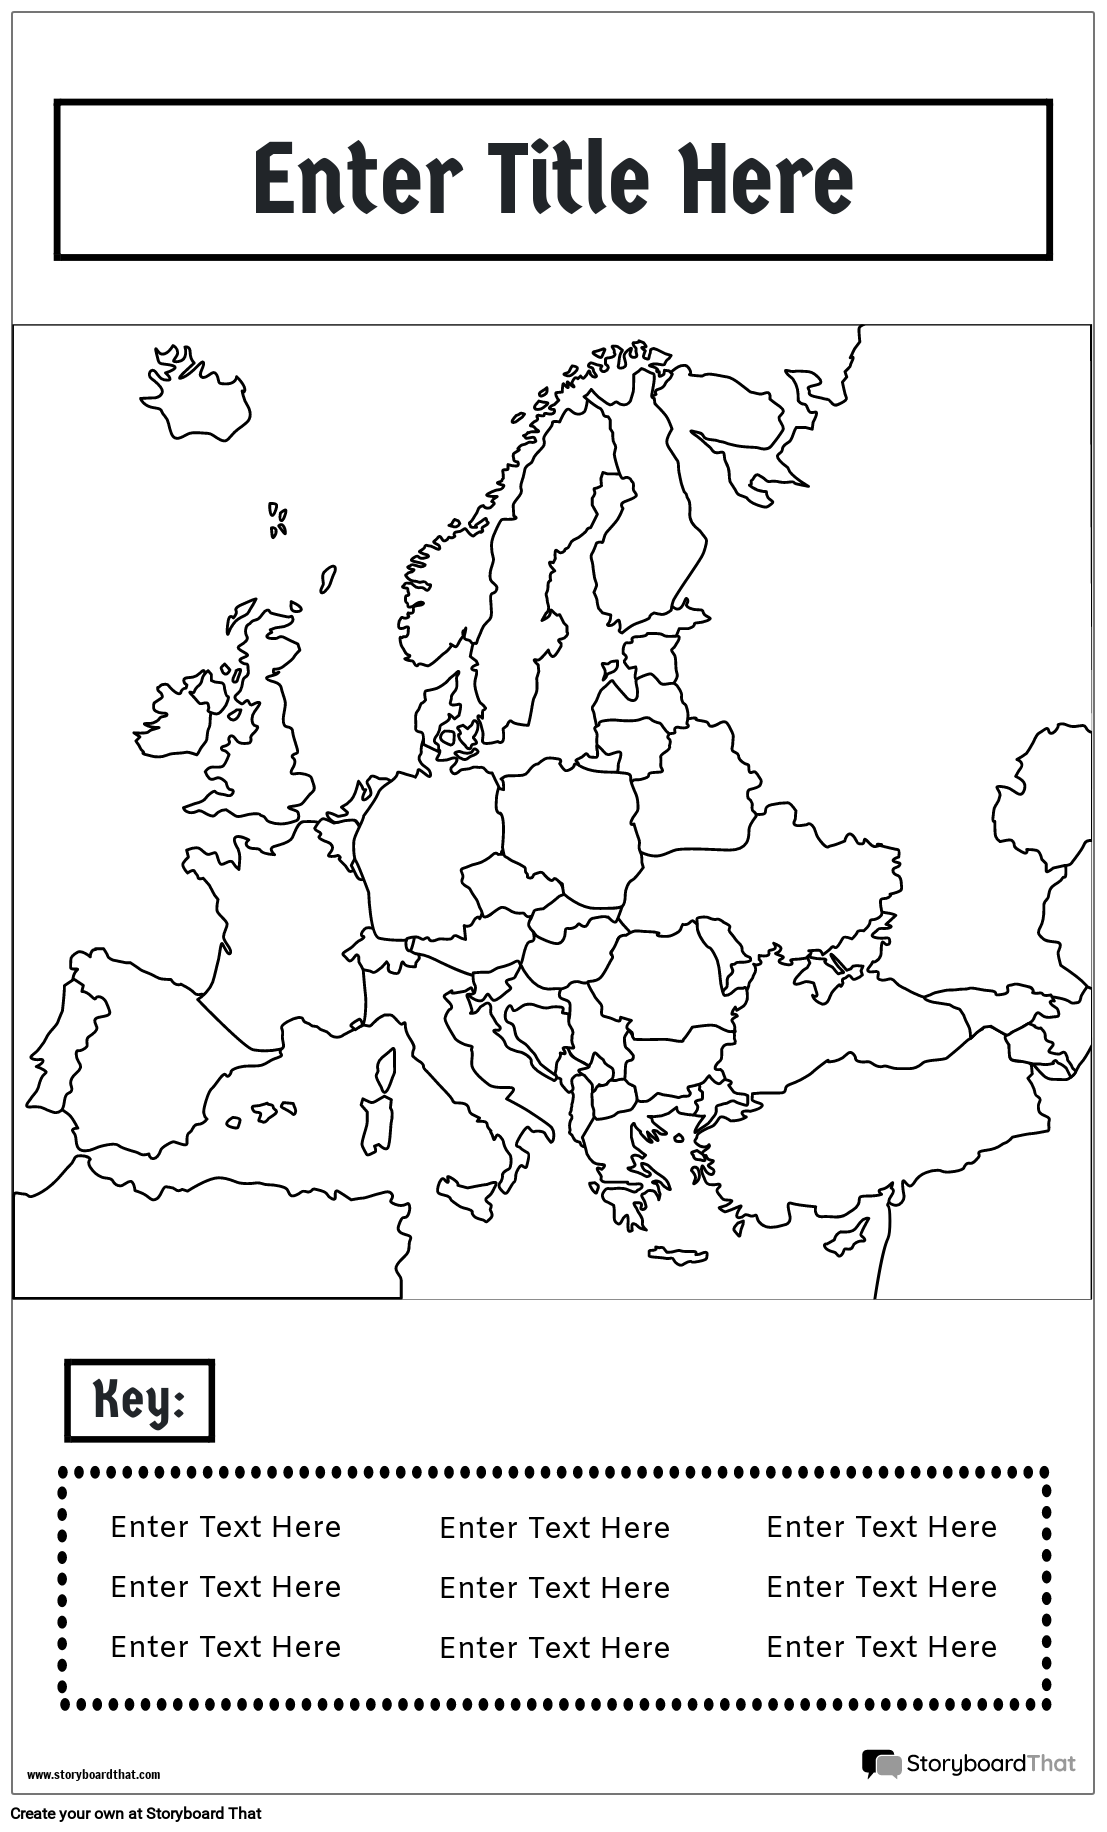 Plagát Mapy 17 BW Portrét-Európa